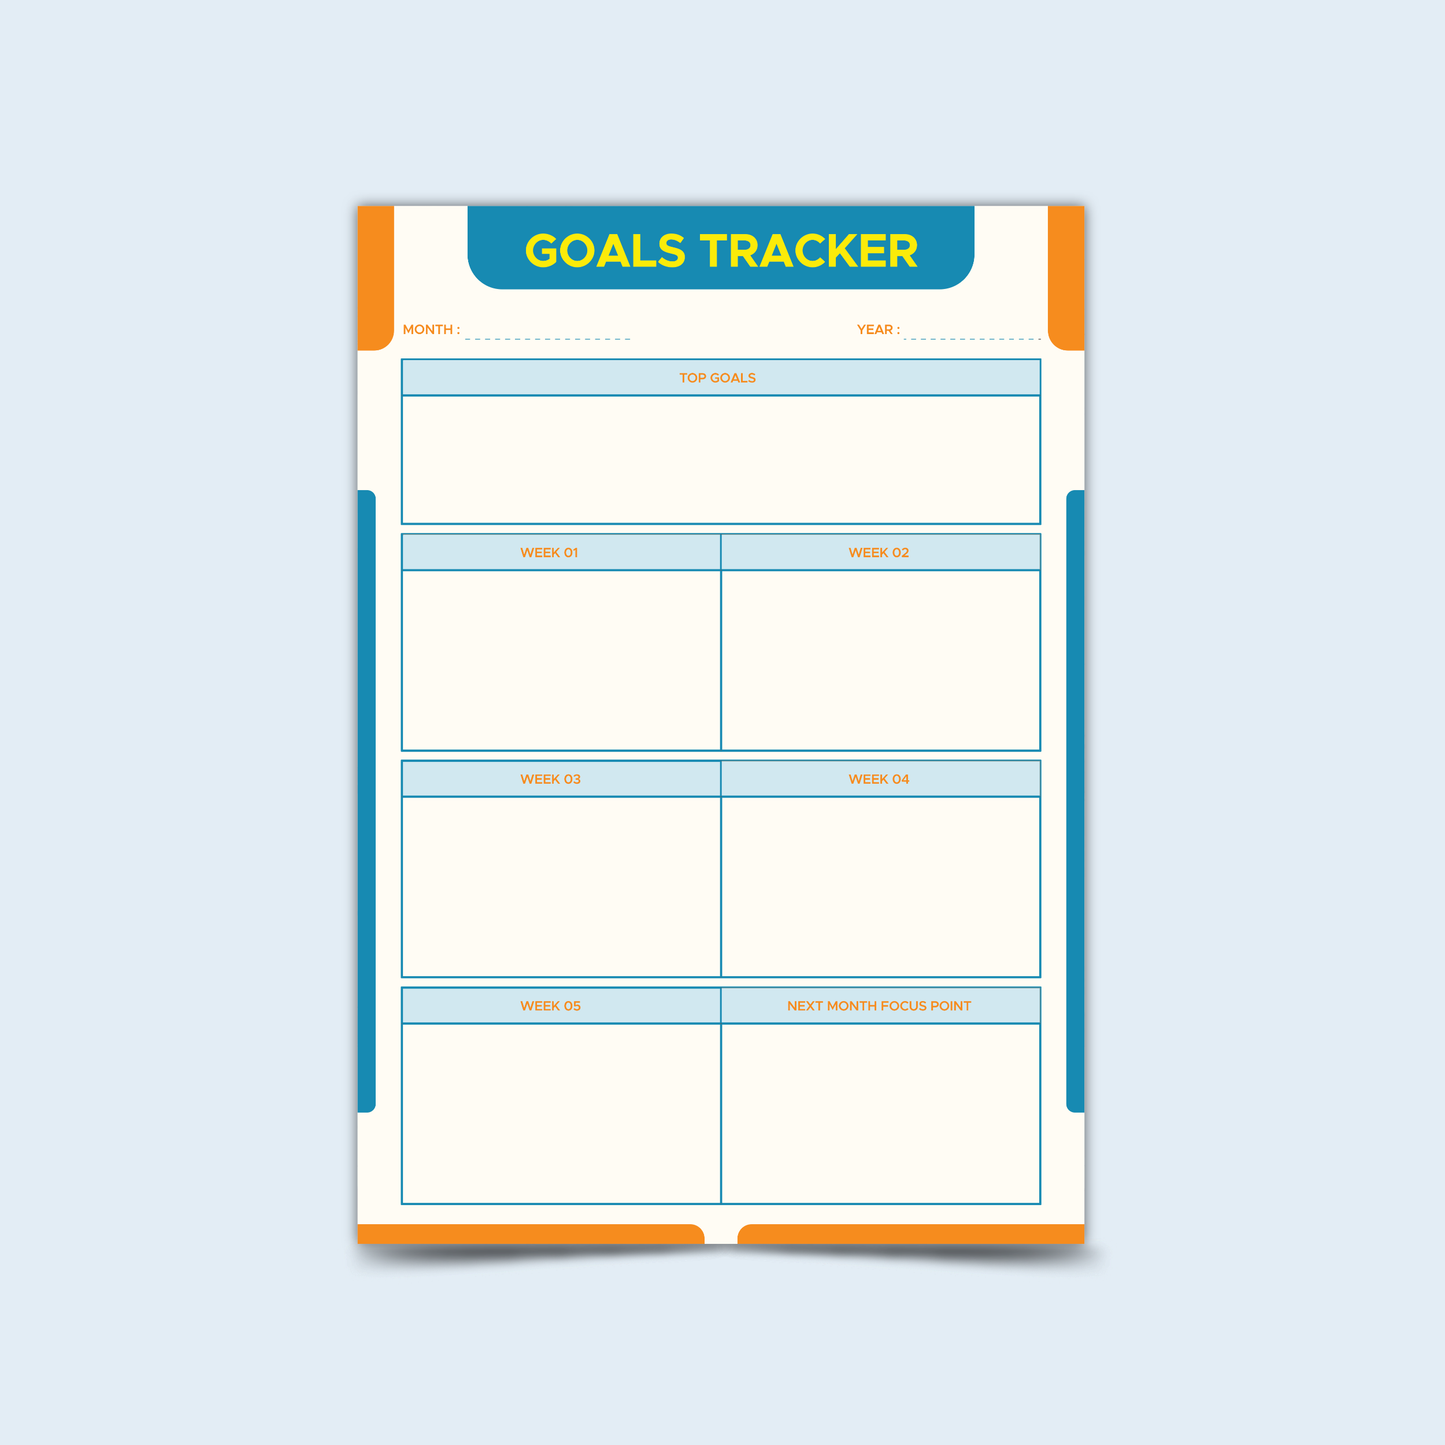 Goals Tracker